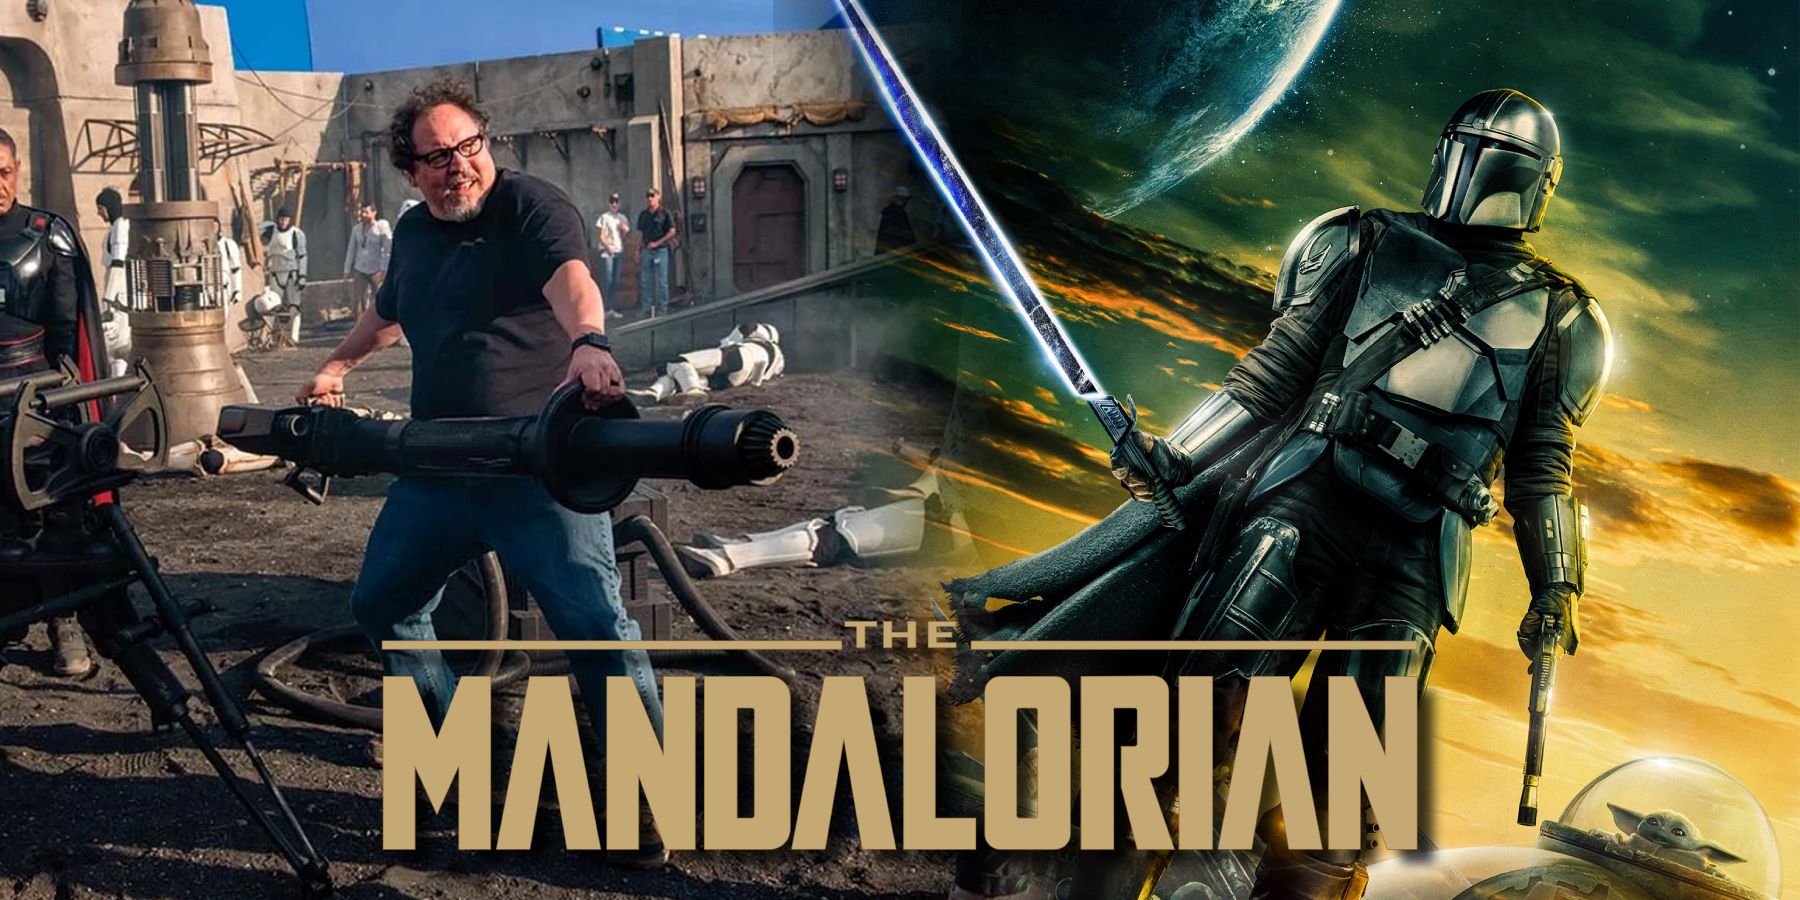 Mandalorian Jon Favreau Din Djarin Grogu Baby Yoda Star Wars